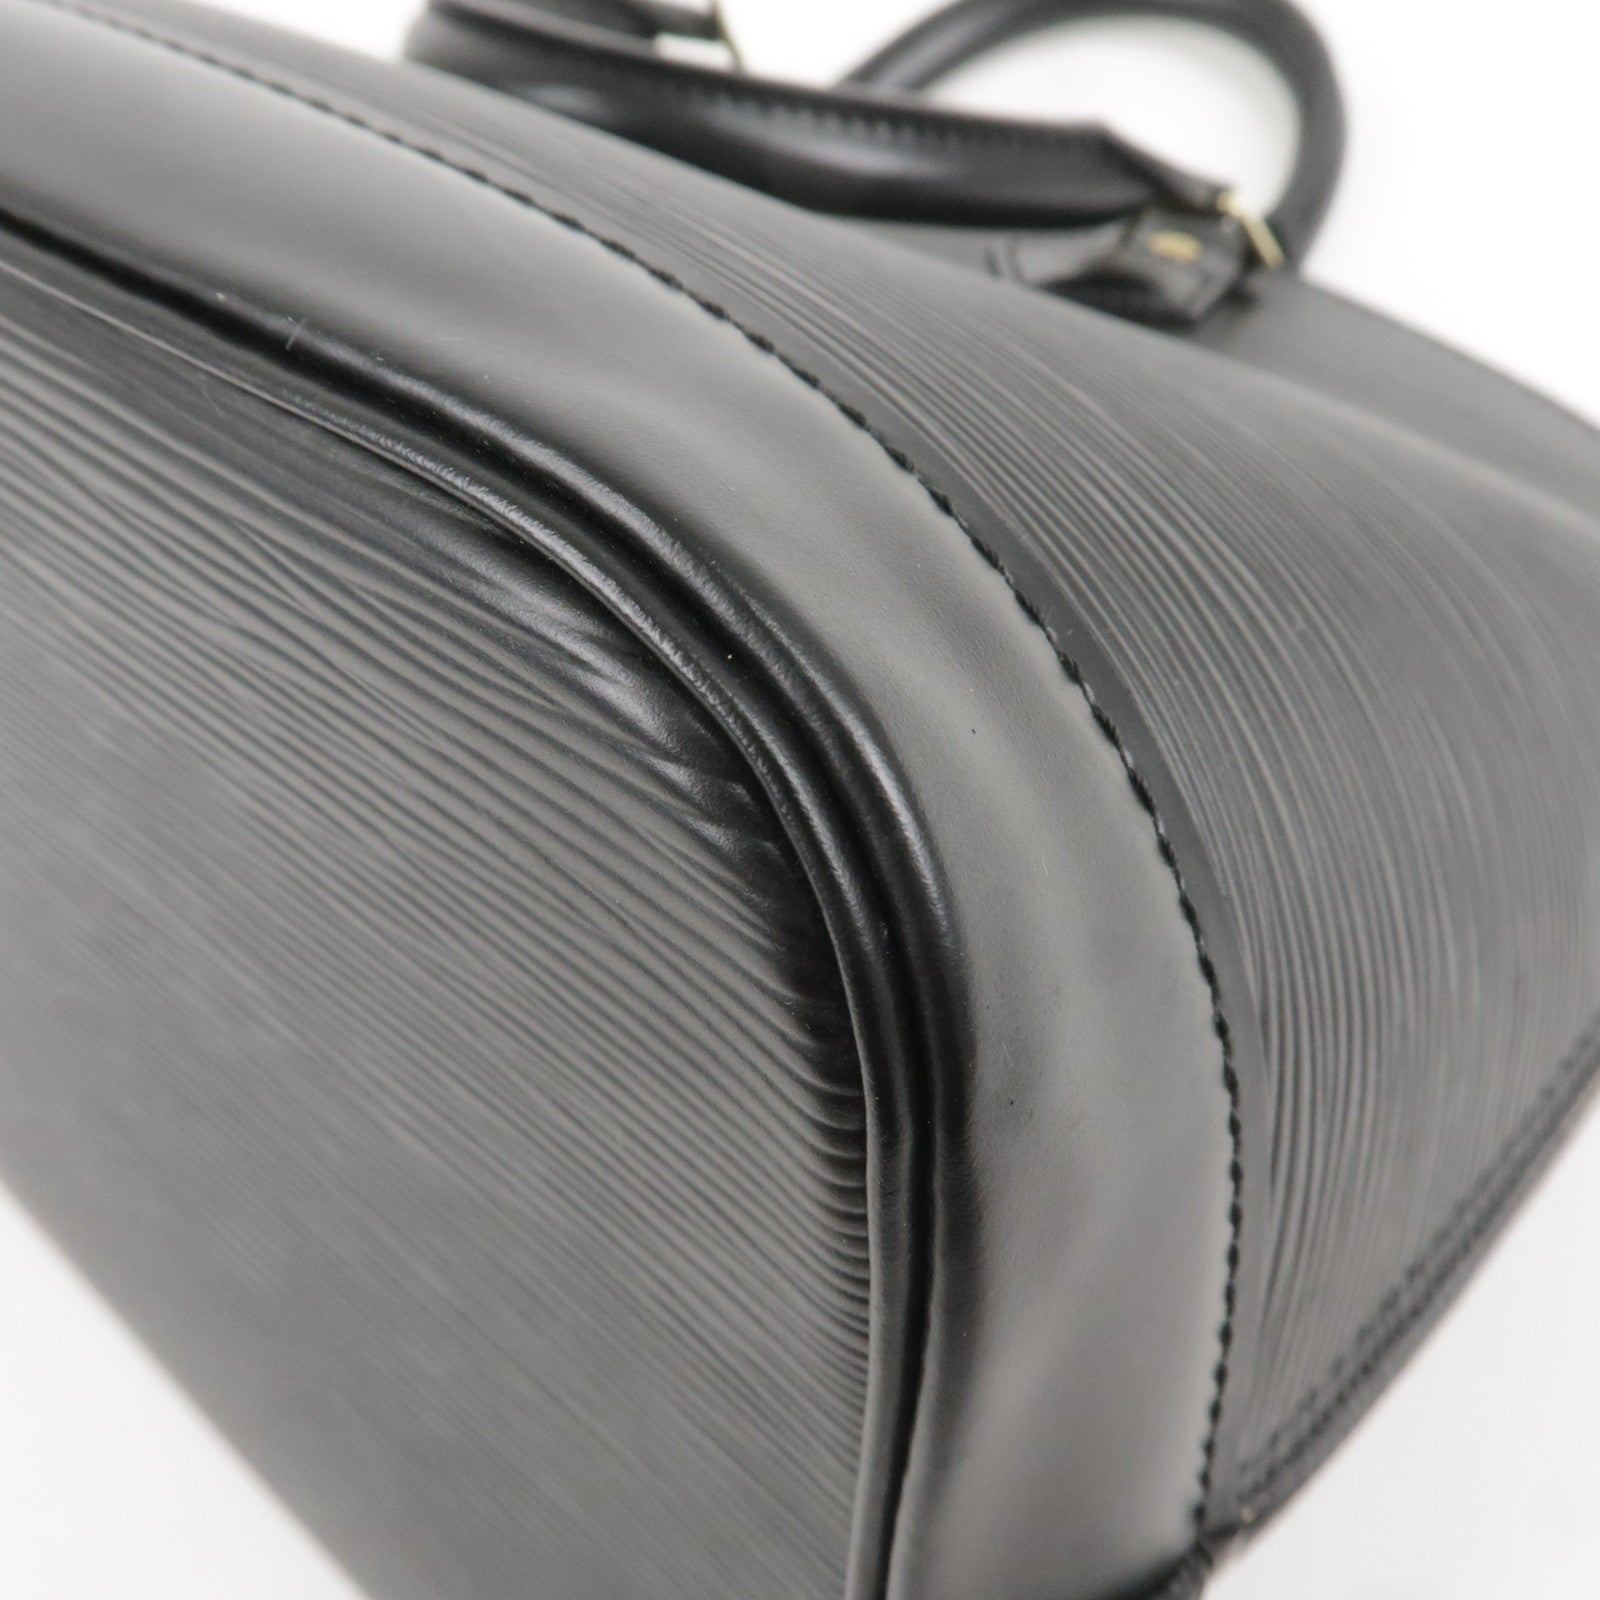 A Vintage Louis Vuitton Shoulder Leather Bag Mi0040